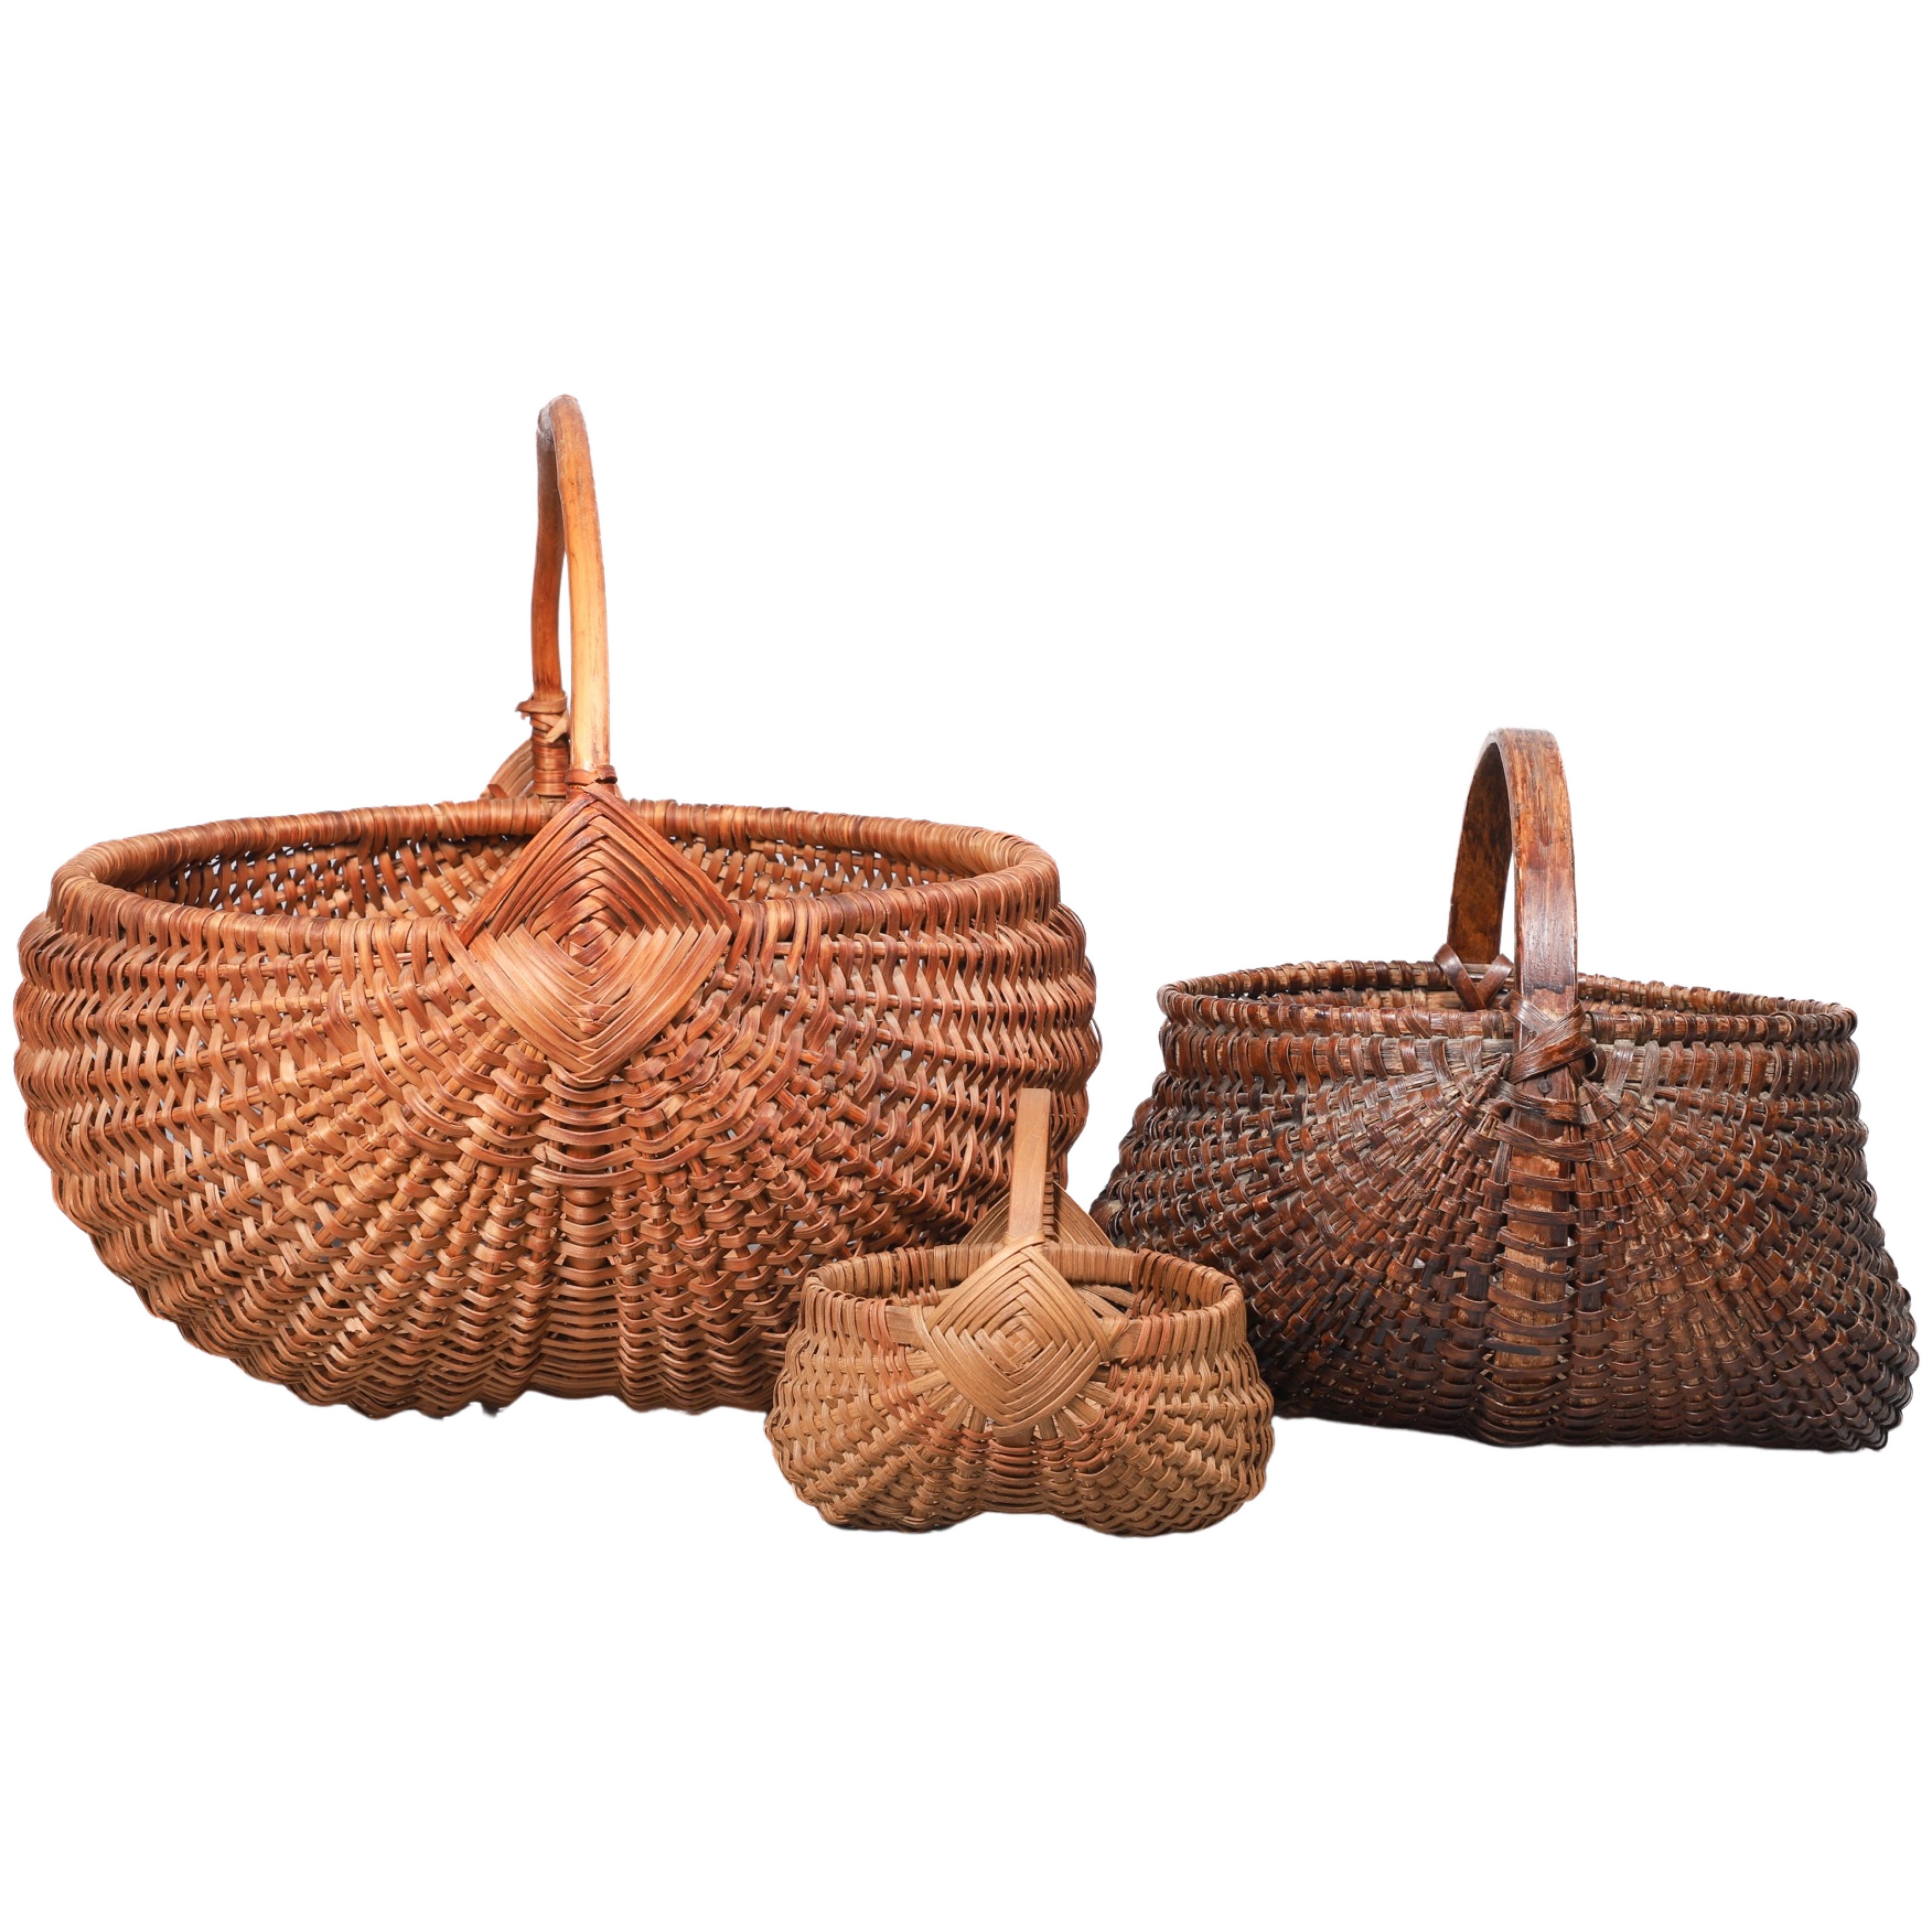 (3) Buttocks baskets, bent wood handles,